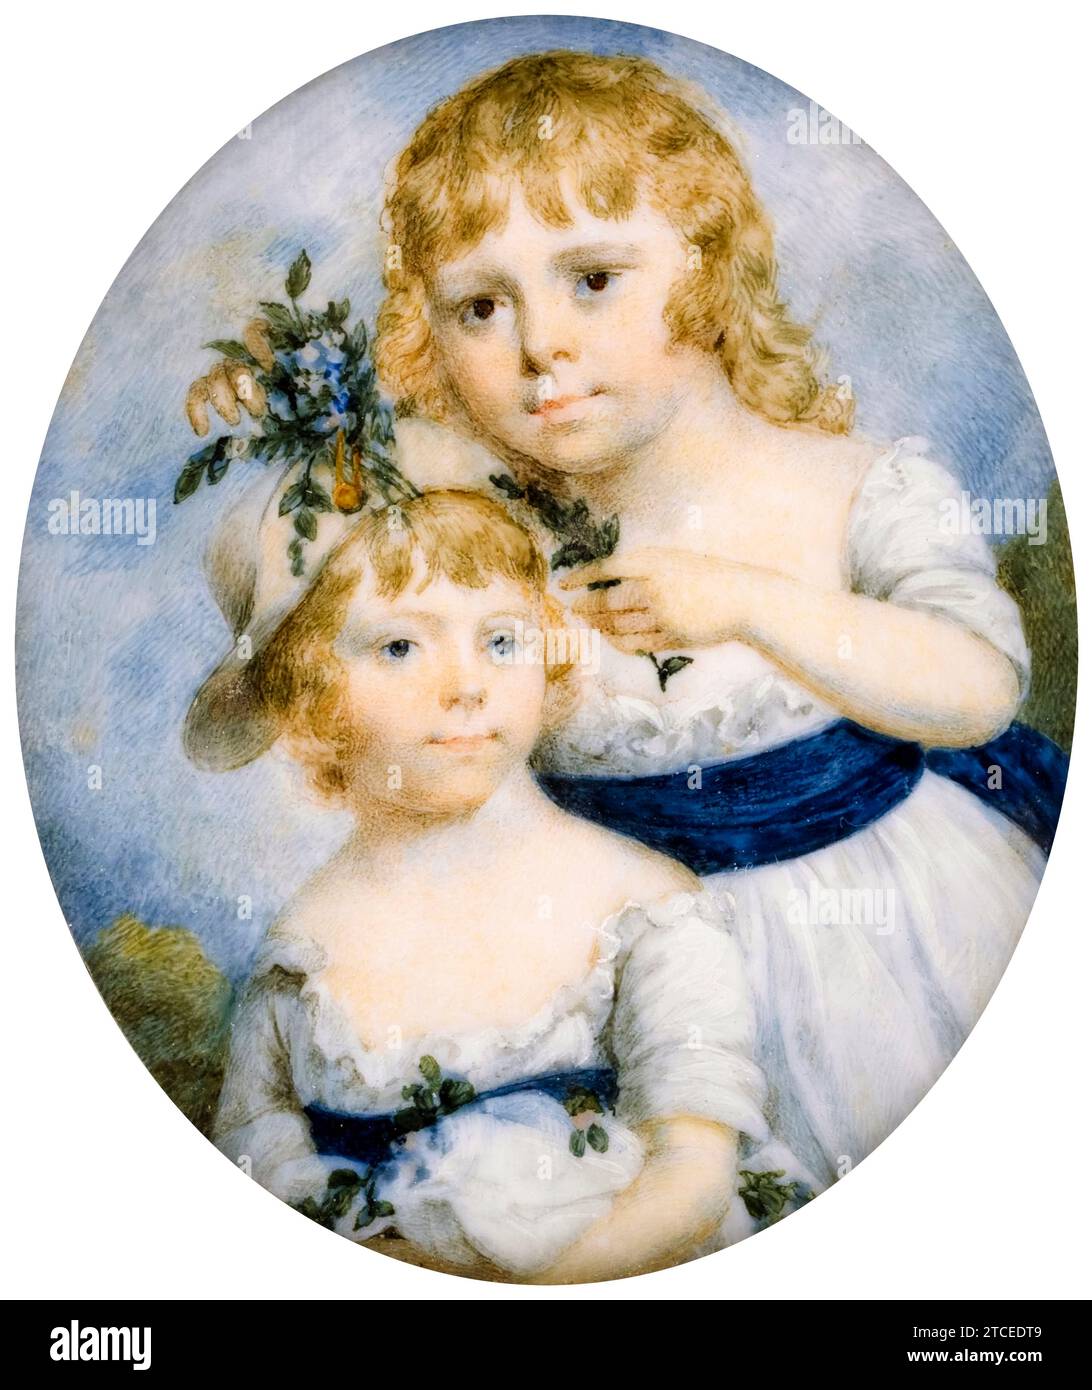 James Nixon, Ritratto di due sorelle, ritratto in miniatura acquerello su avorio, 1790-1800 Foto Stock